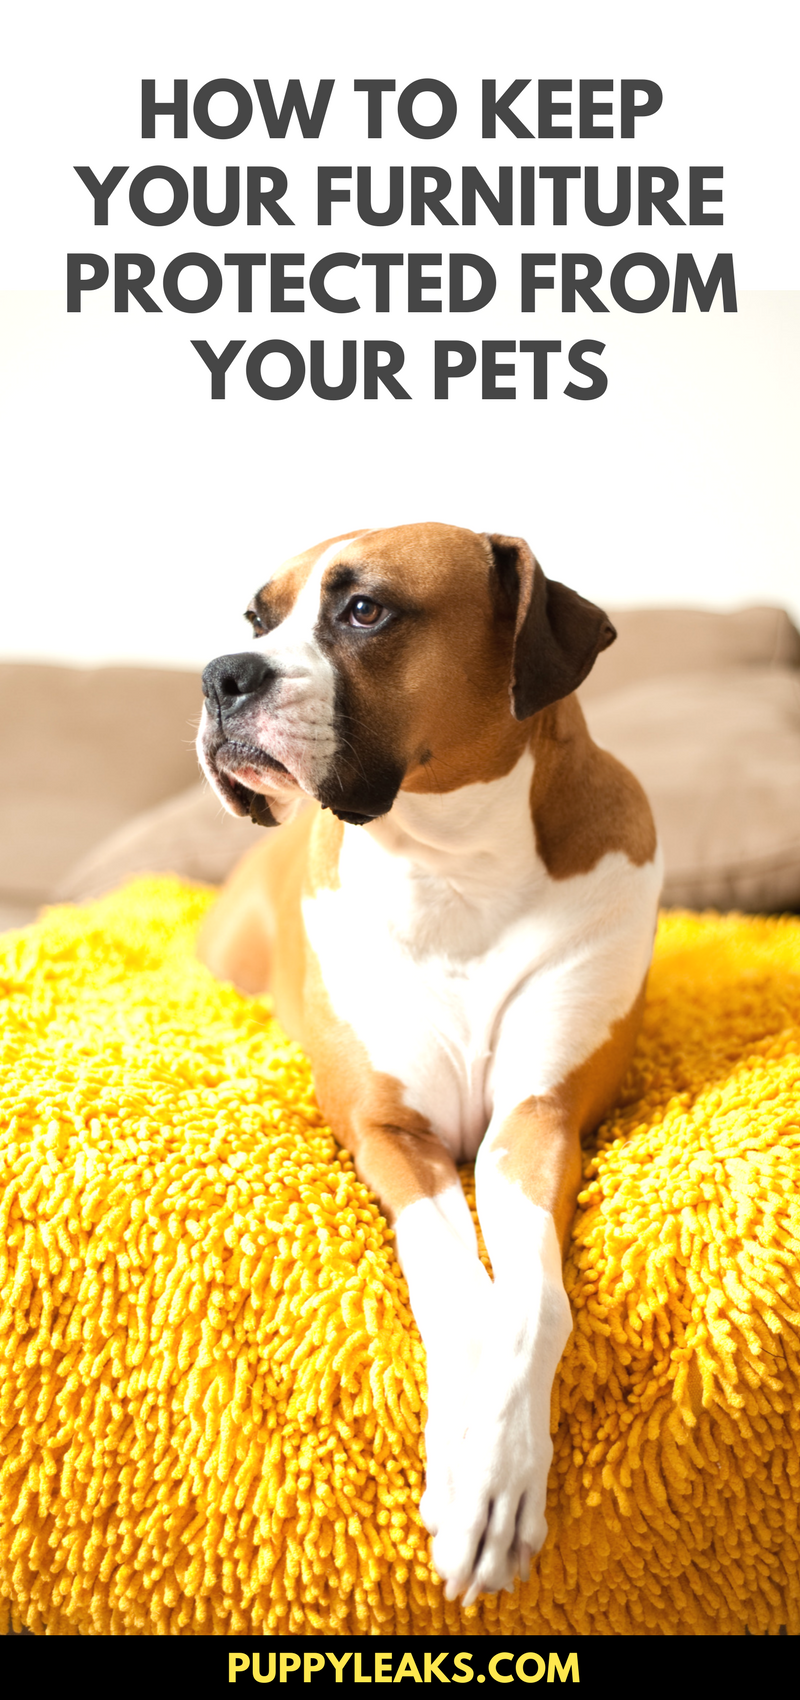 10 façons simples de protéger vos meubles contre les chiens